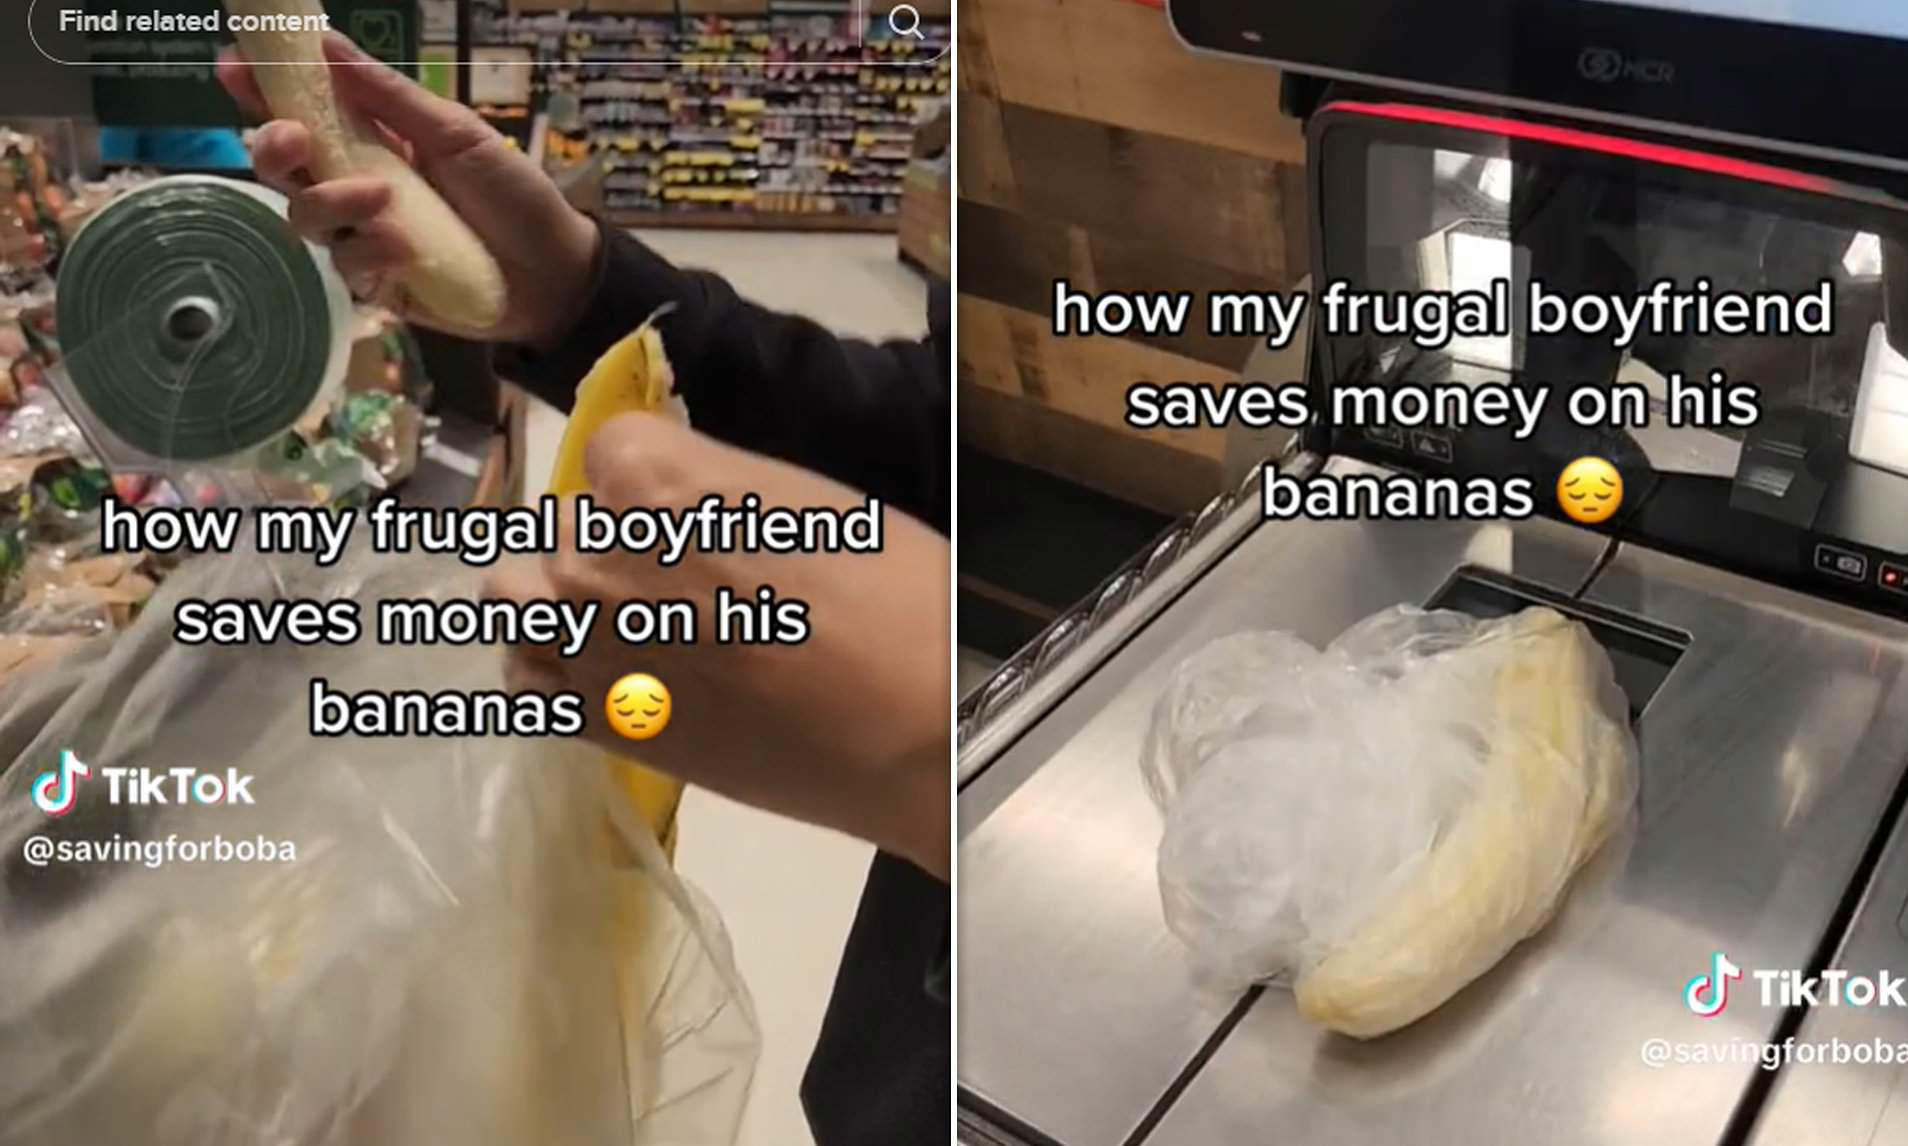 Man Unwraps Bananas Before Weighing To Save Cash - New Money-Saving Hack!